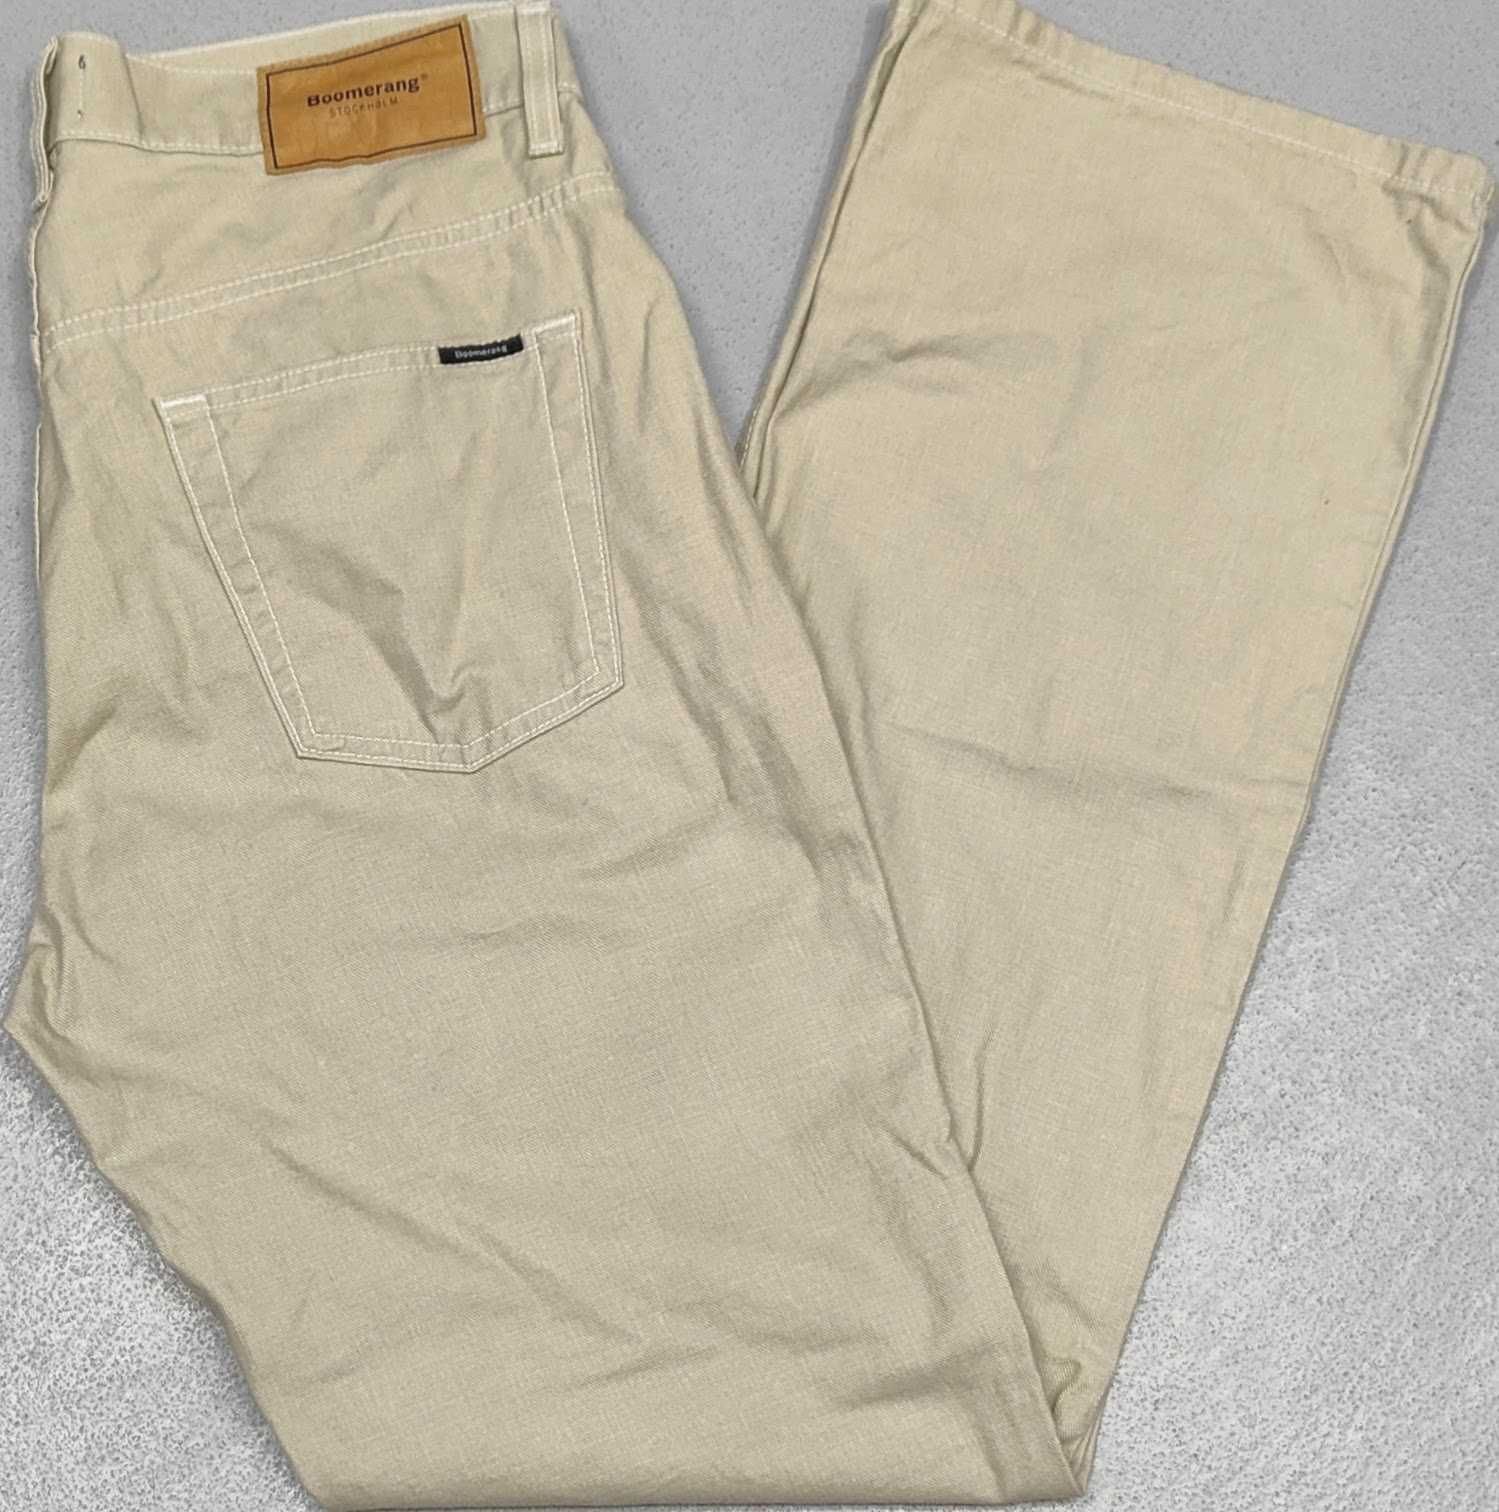 Wr) BOOMERANG męskie spodnie jeansowe Roz.34/34